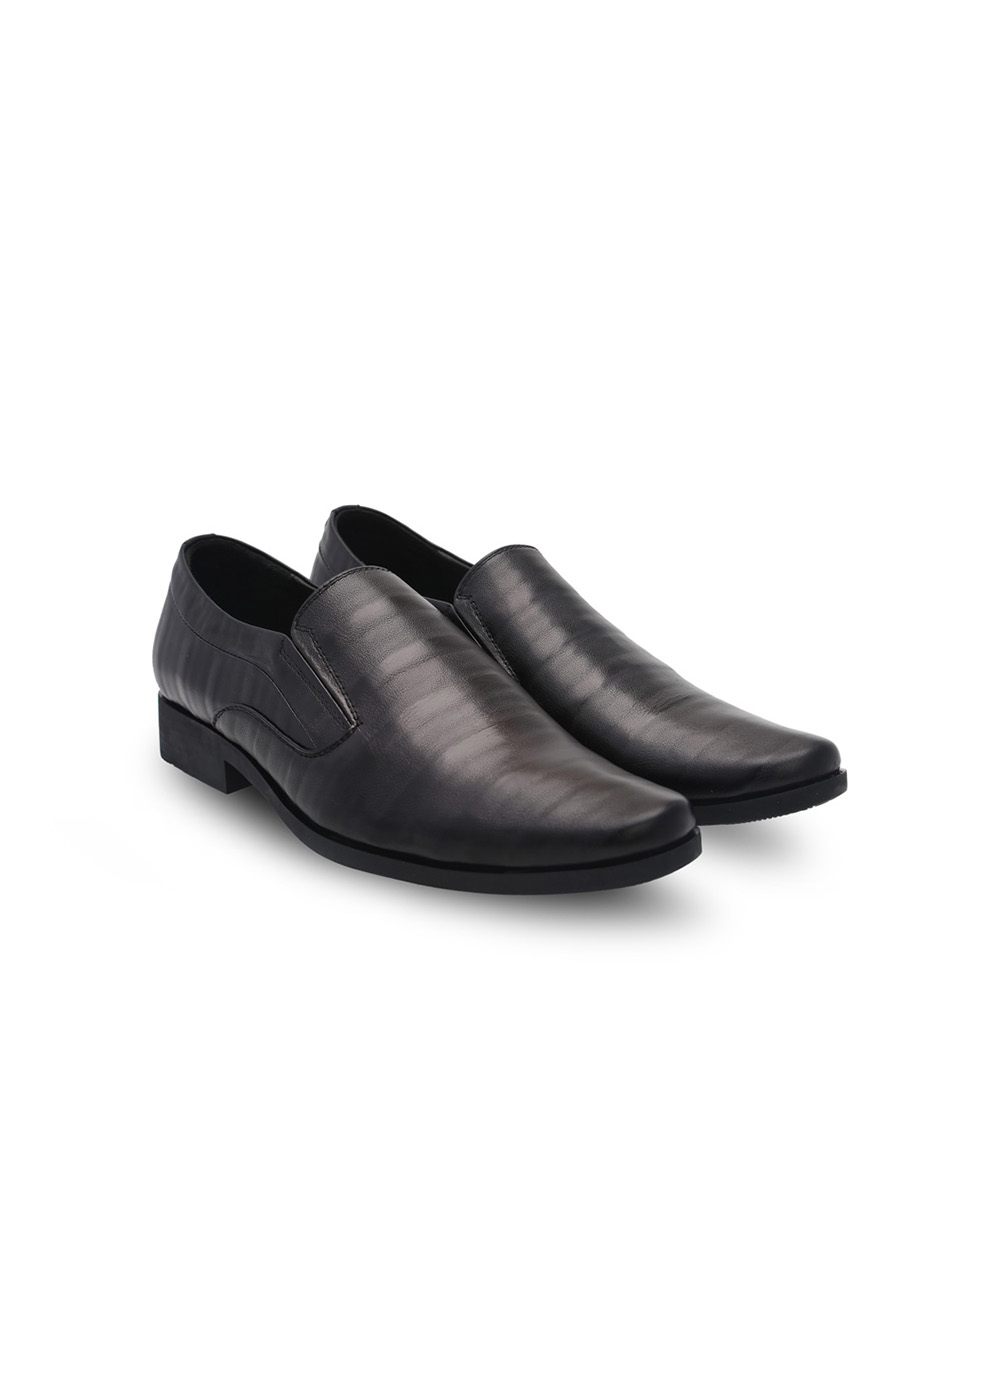 Giày tây nam, giày công sở vân da ngang cao cấp siêu êm chân thương hiệu PABNO - PN127